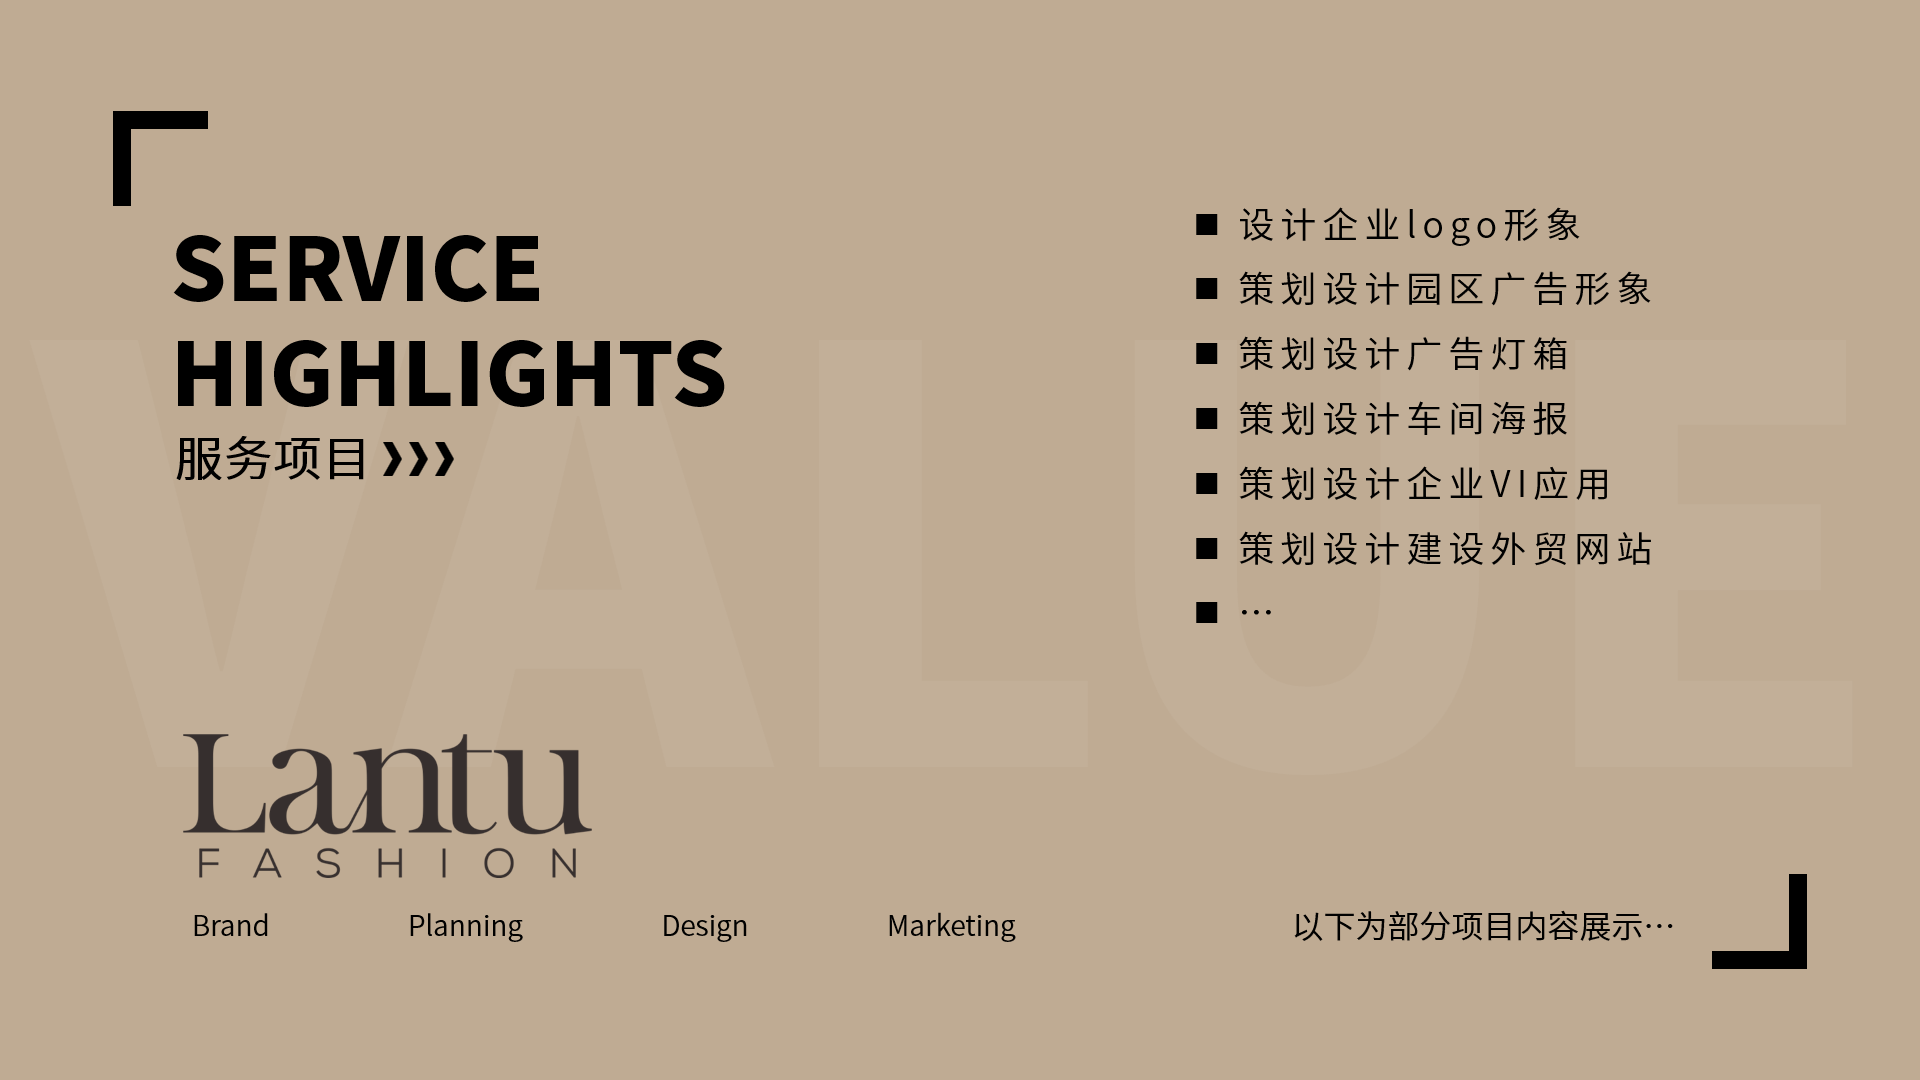 武漢服飾外貿公司形象設計與外貿網站(zhàn)建設